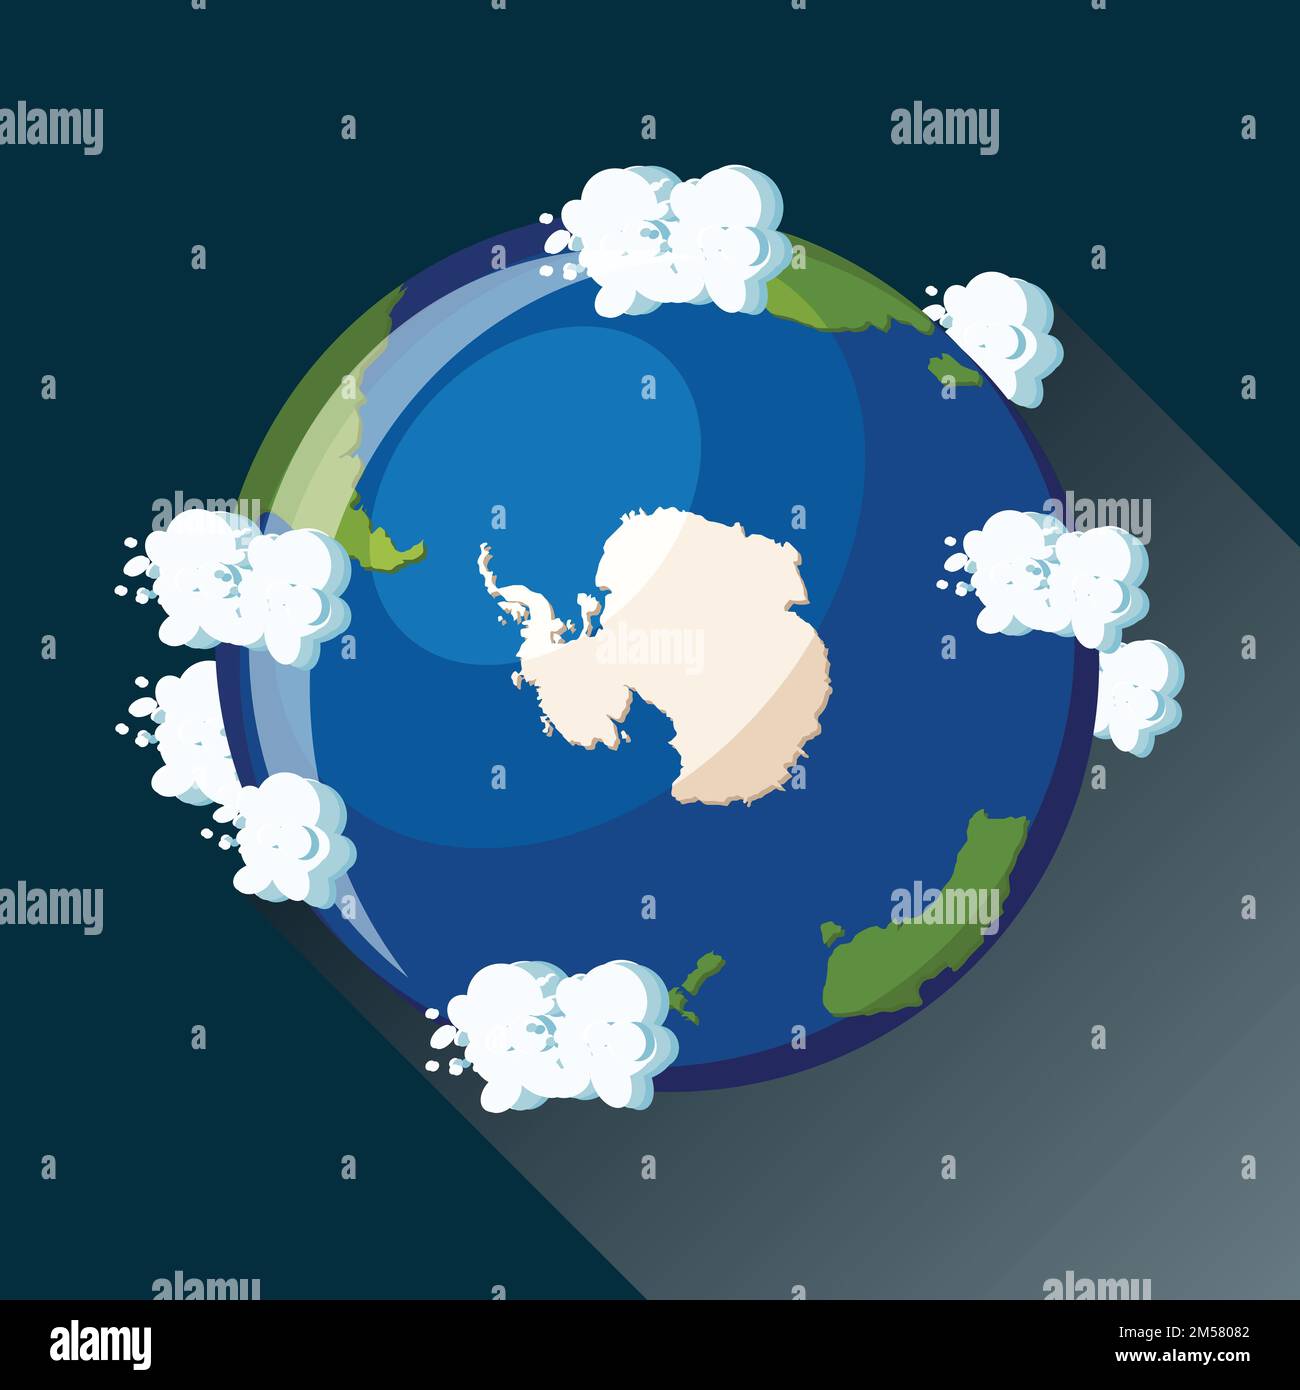 Mappa Antartide sul pianeta Terra, vista dallo spazio. Icona del globo dell'Antartide. Mappa del pianeta Terra con oceano blu, continenti e nuvole intorno. Cartone animato Illustrazione Vettoriale